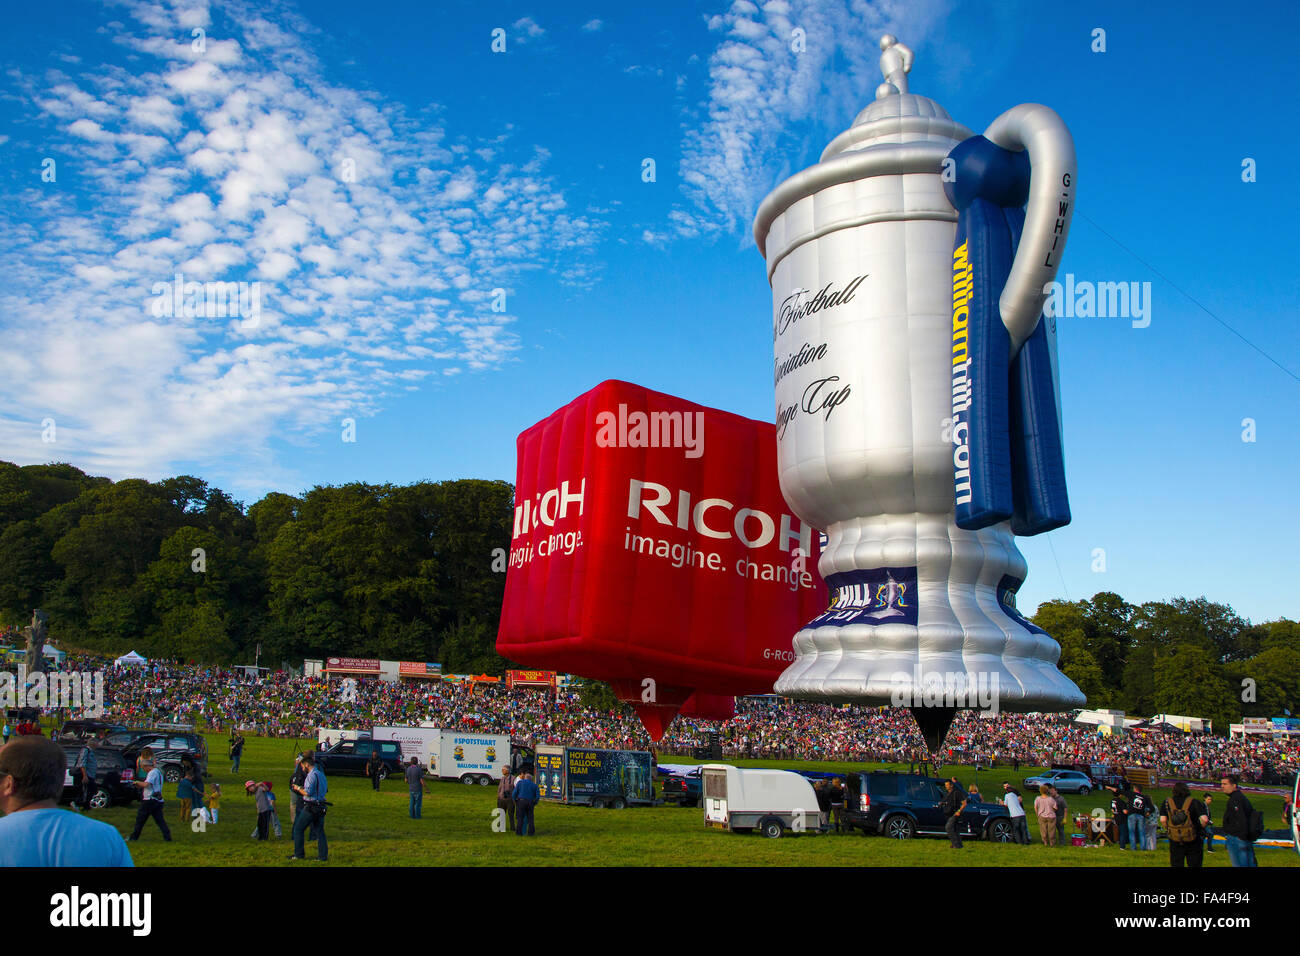 Association Scottish Challenge Cup et Ricoh montgolfières au Bristol International Hot Air Balloon Fiesta 2015 Banque D'Images